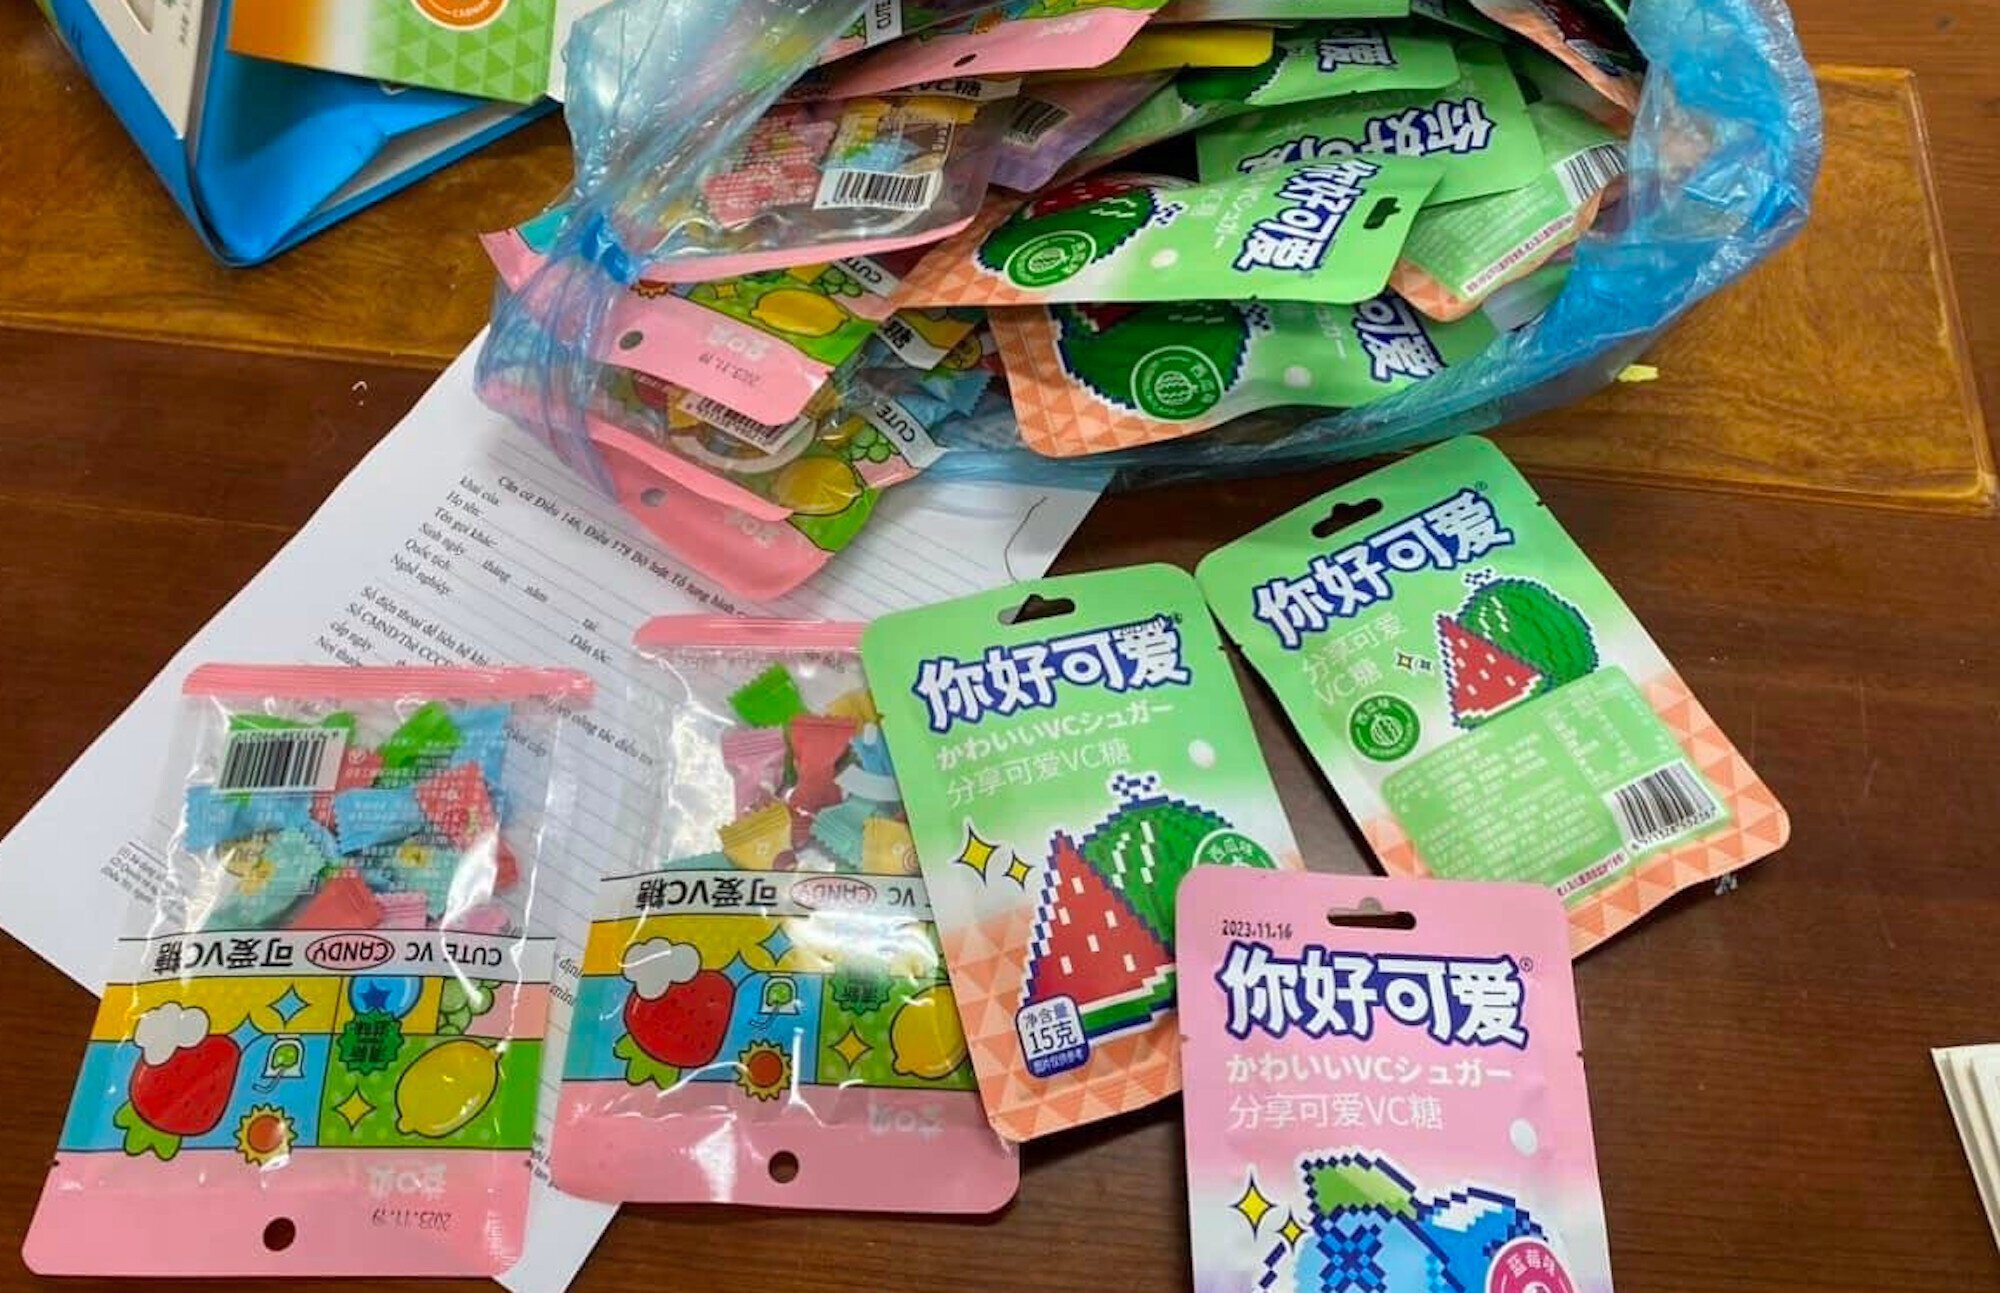 Nhiều trường học trên địa bàn Hà Nội phát đi cảnh báo về một số loại kẹo lạ không rõ nguồn gốc xuất xứ. (Ảnh: Nhà trường cung cấp)